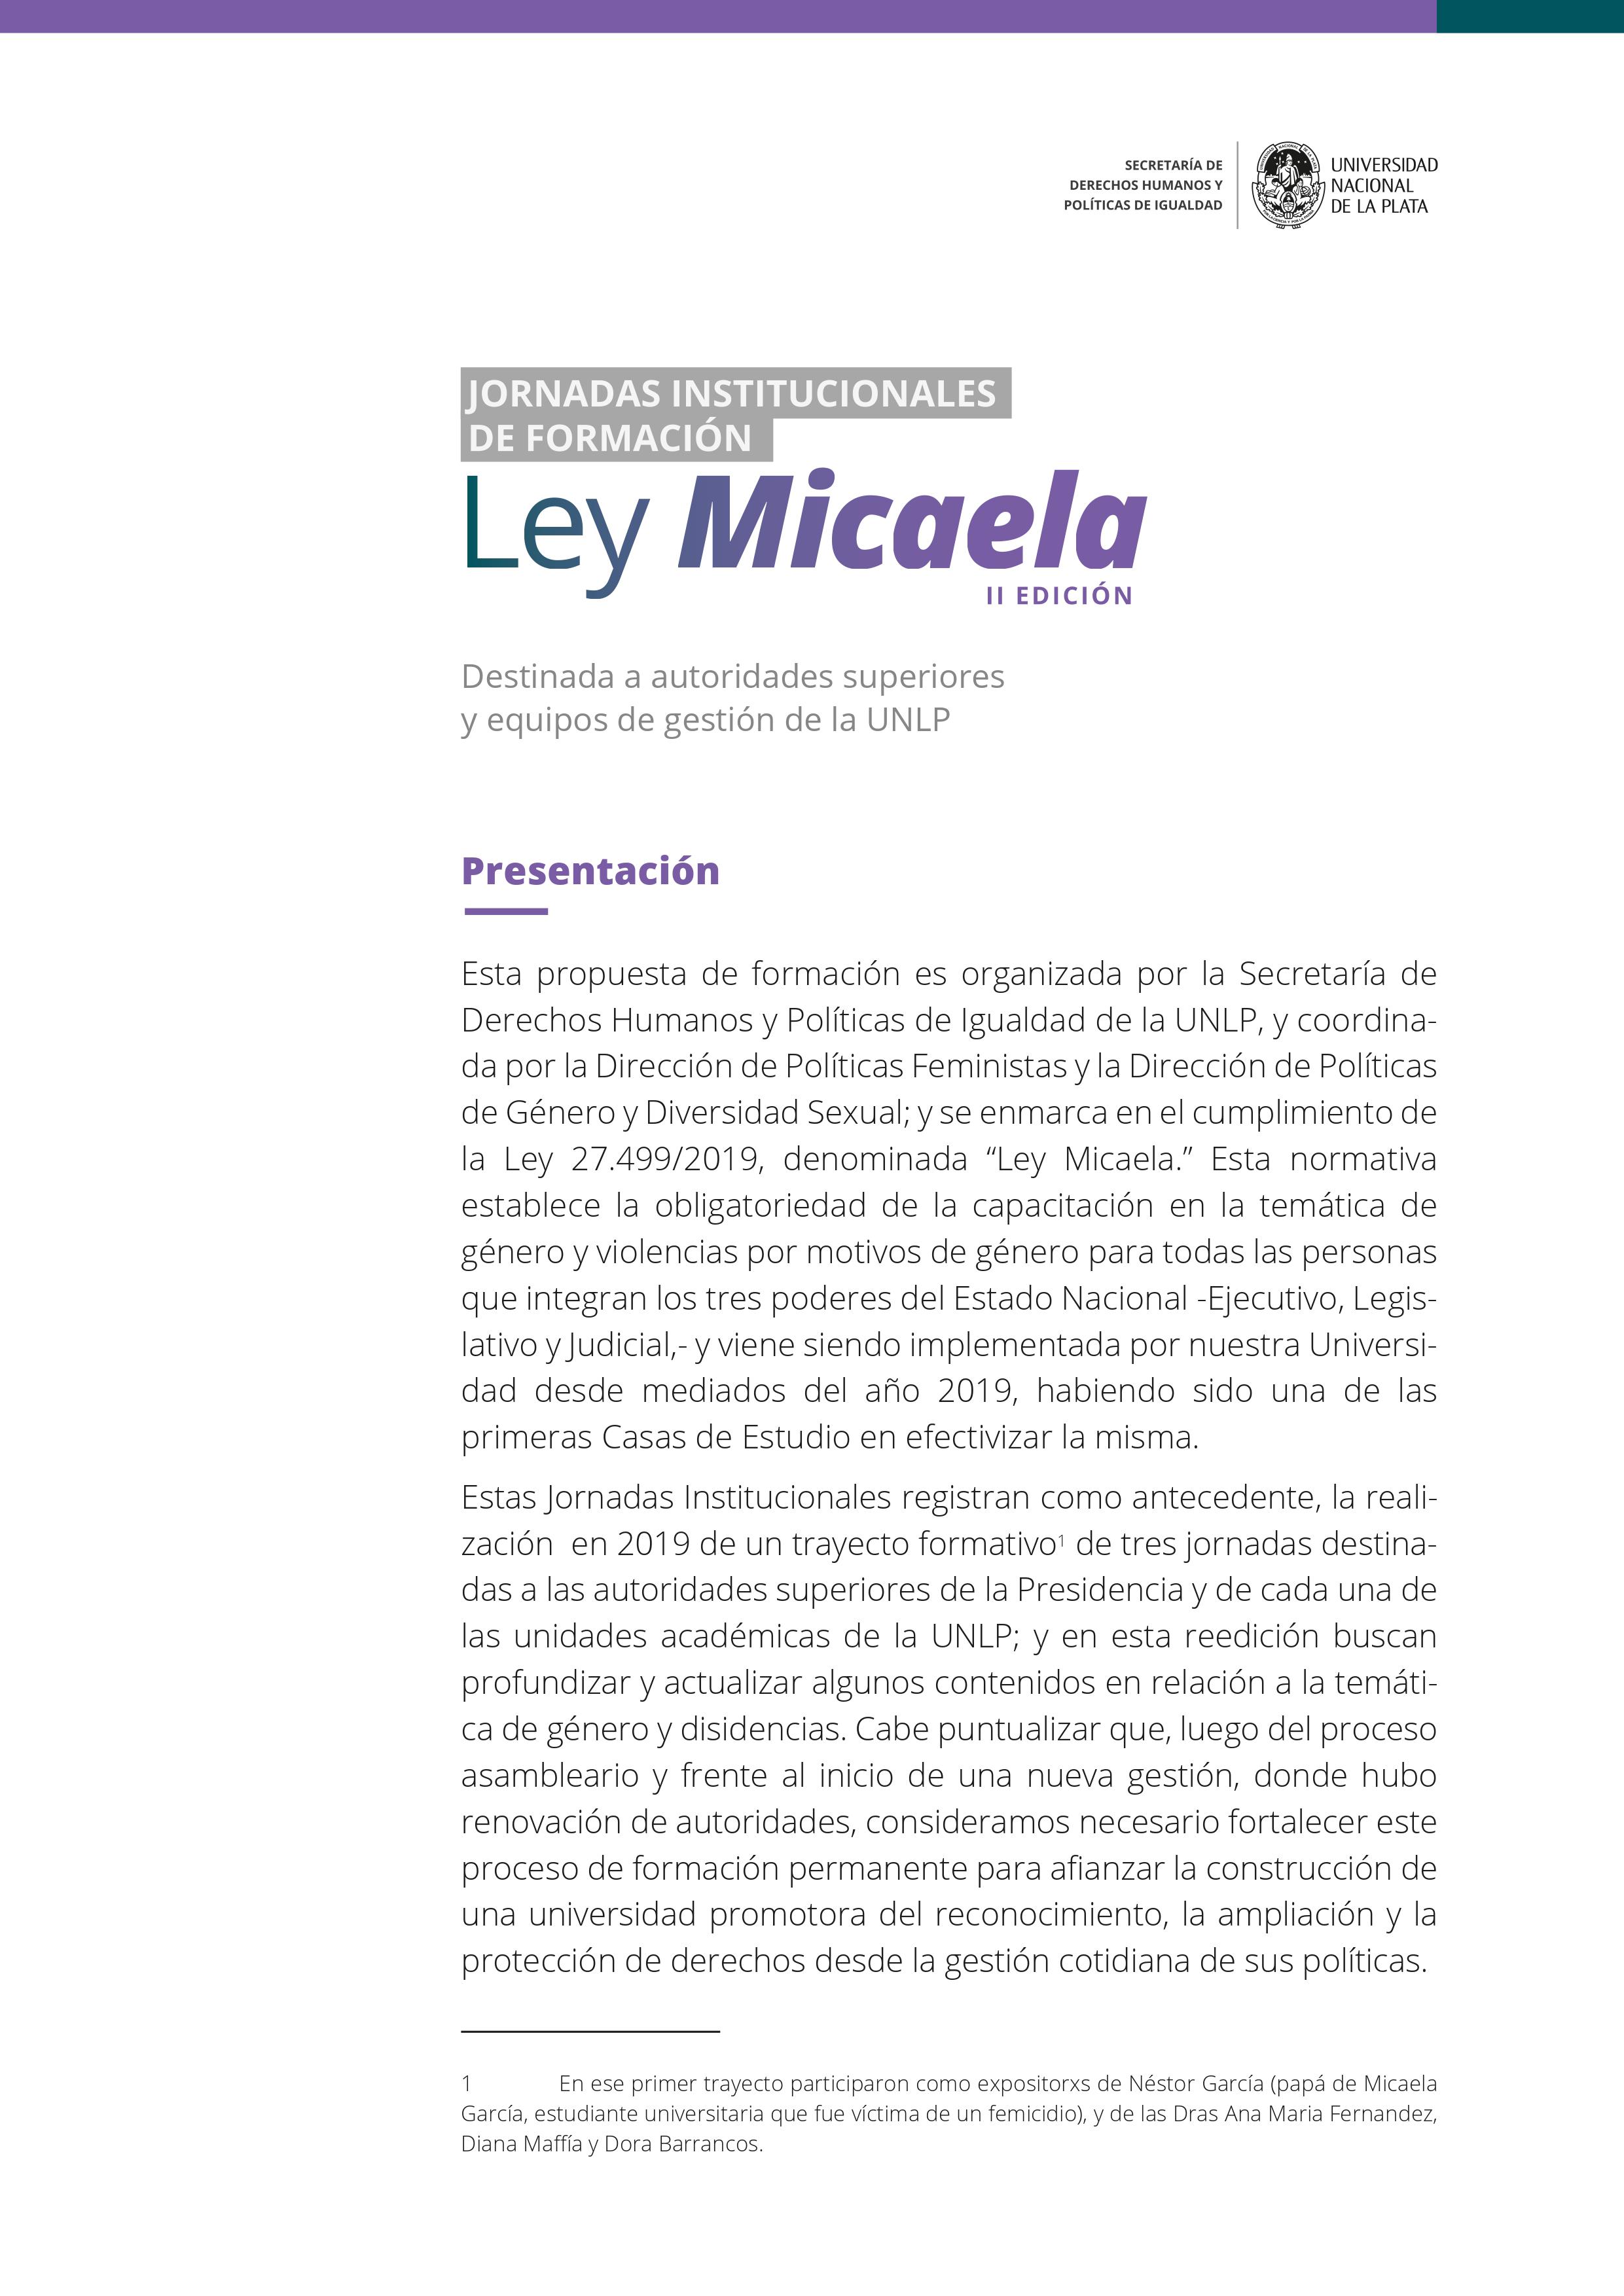 CAPACITACION DE GÉNERO - Invitación a II Edición de Capacitación Ley  Micaela - Facultad de Ciencias Jurídicas y Sociales